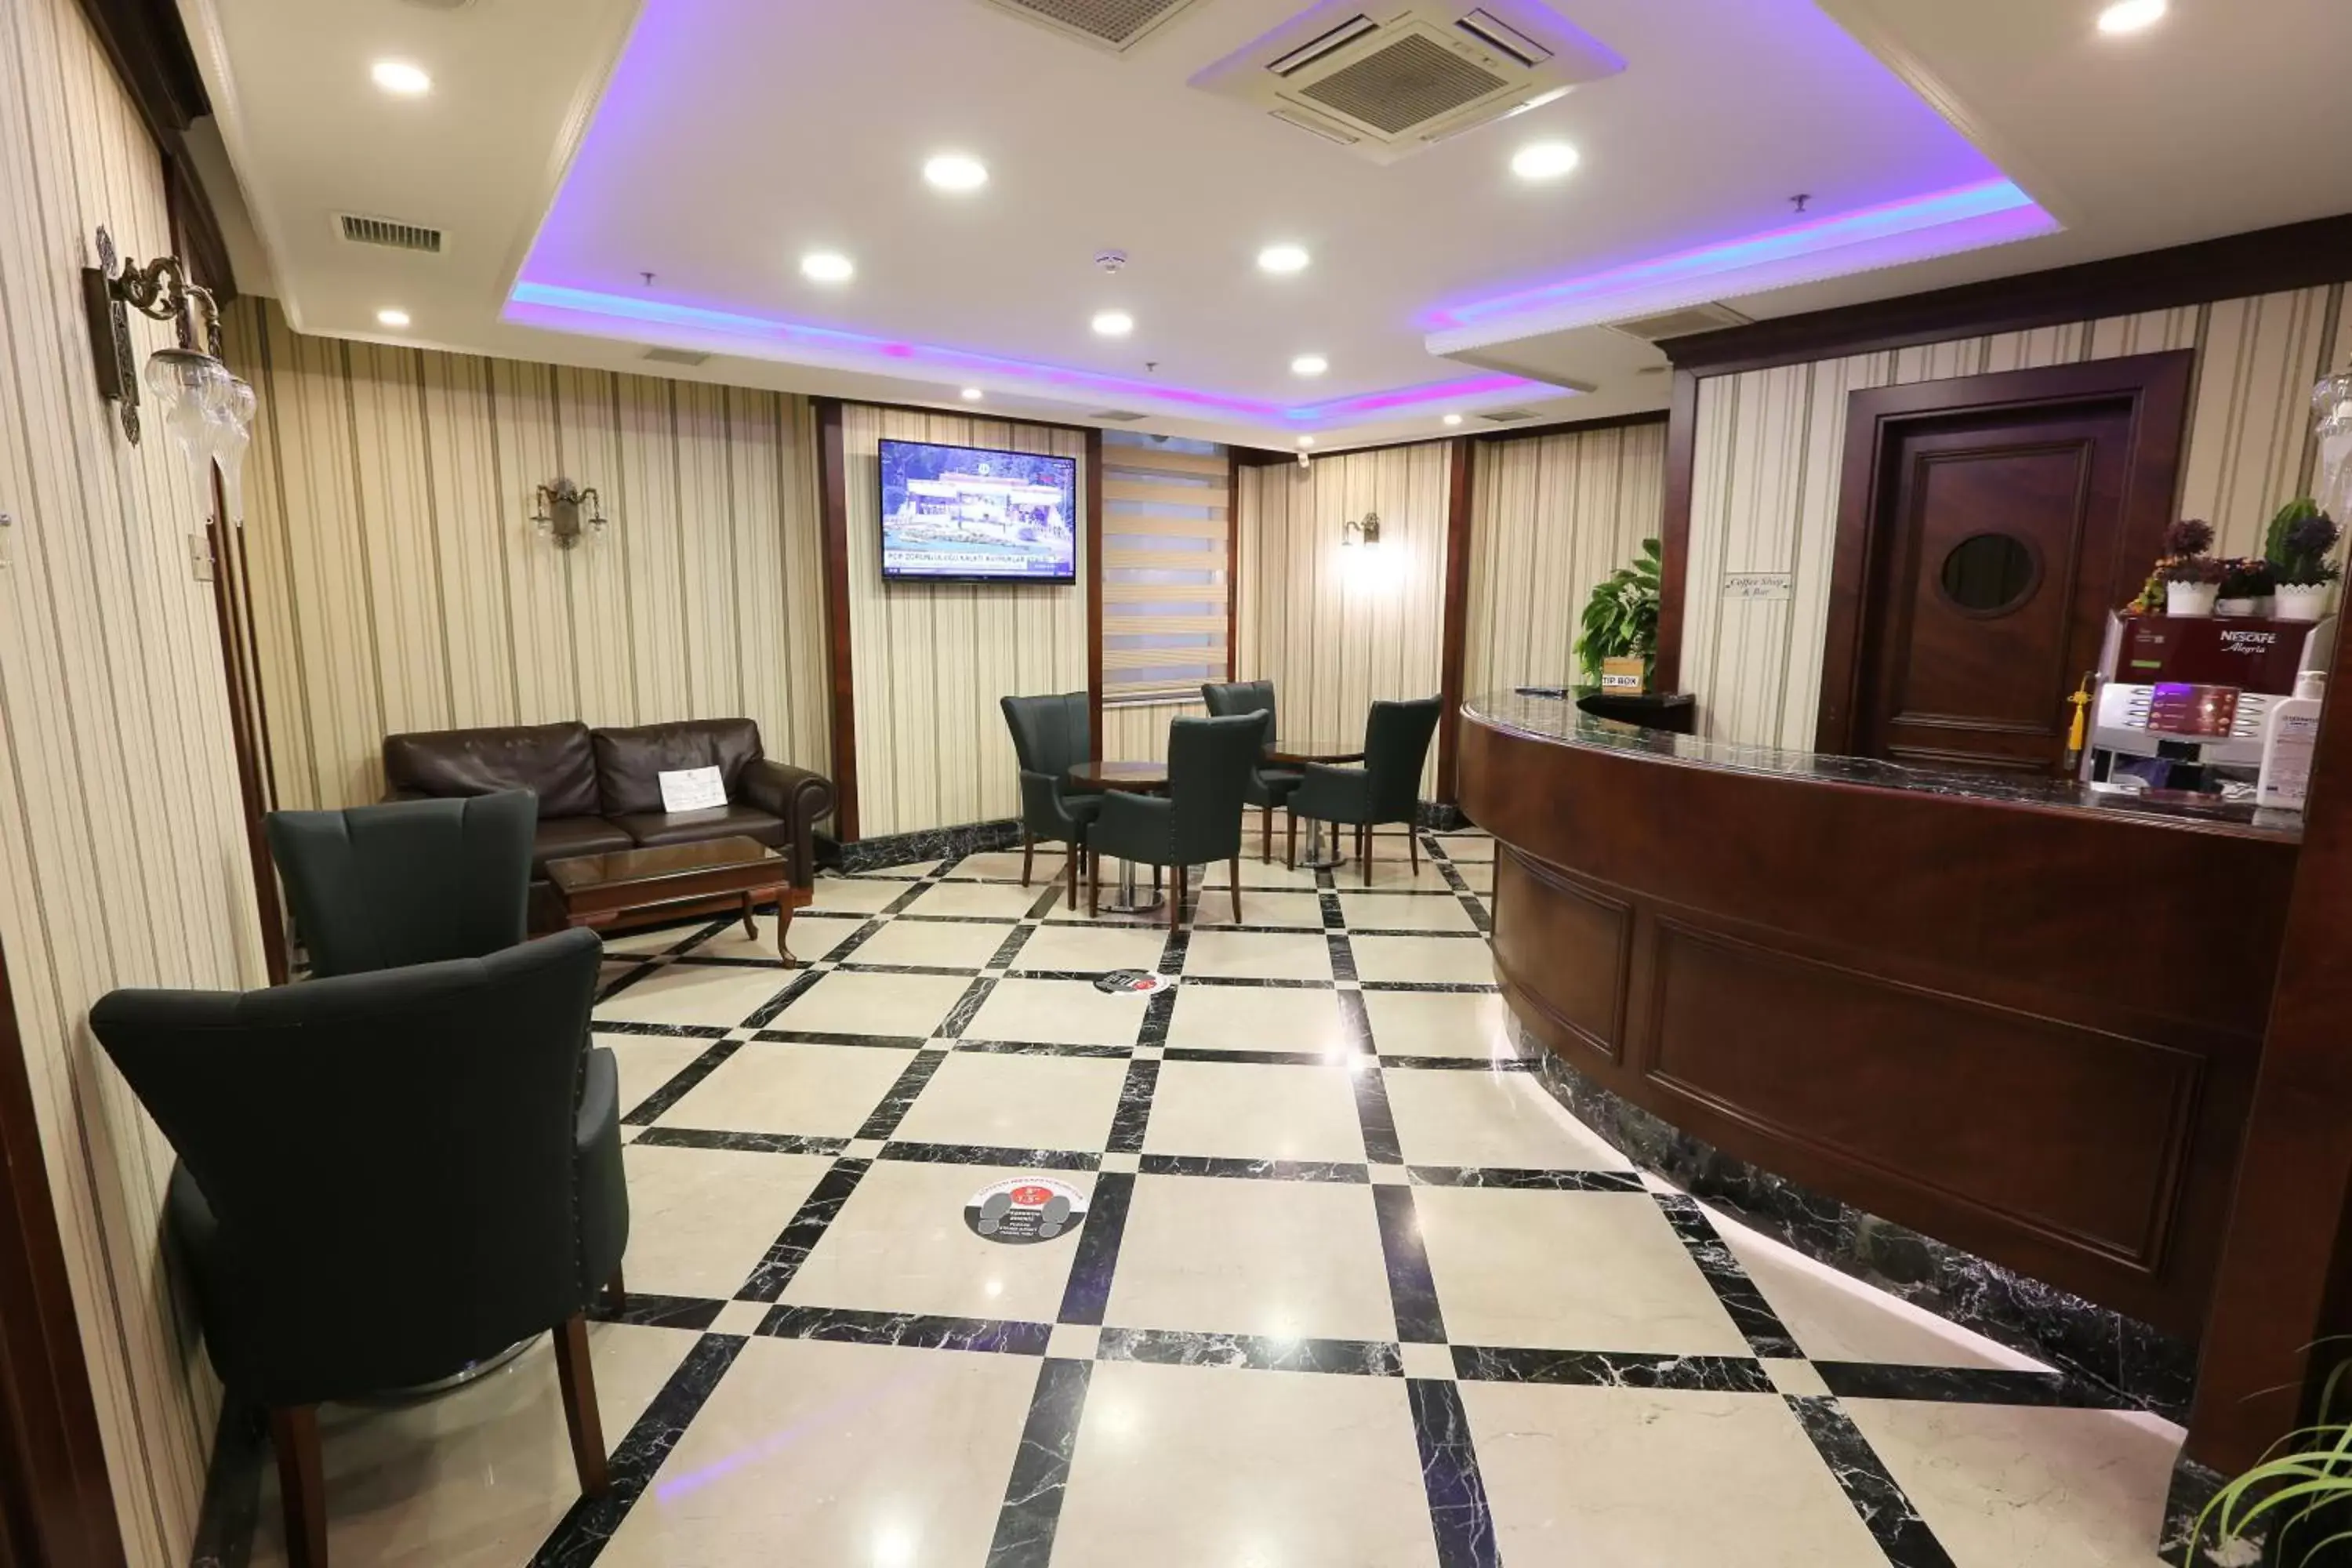 Lobby or reception, Lobby/Reception in Alpinn Hotel Istanbul